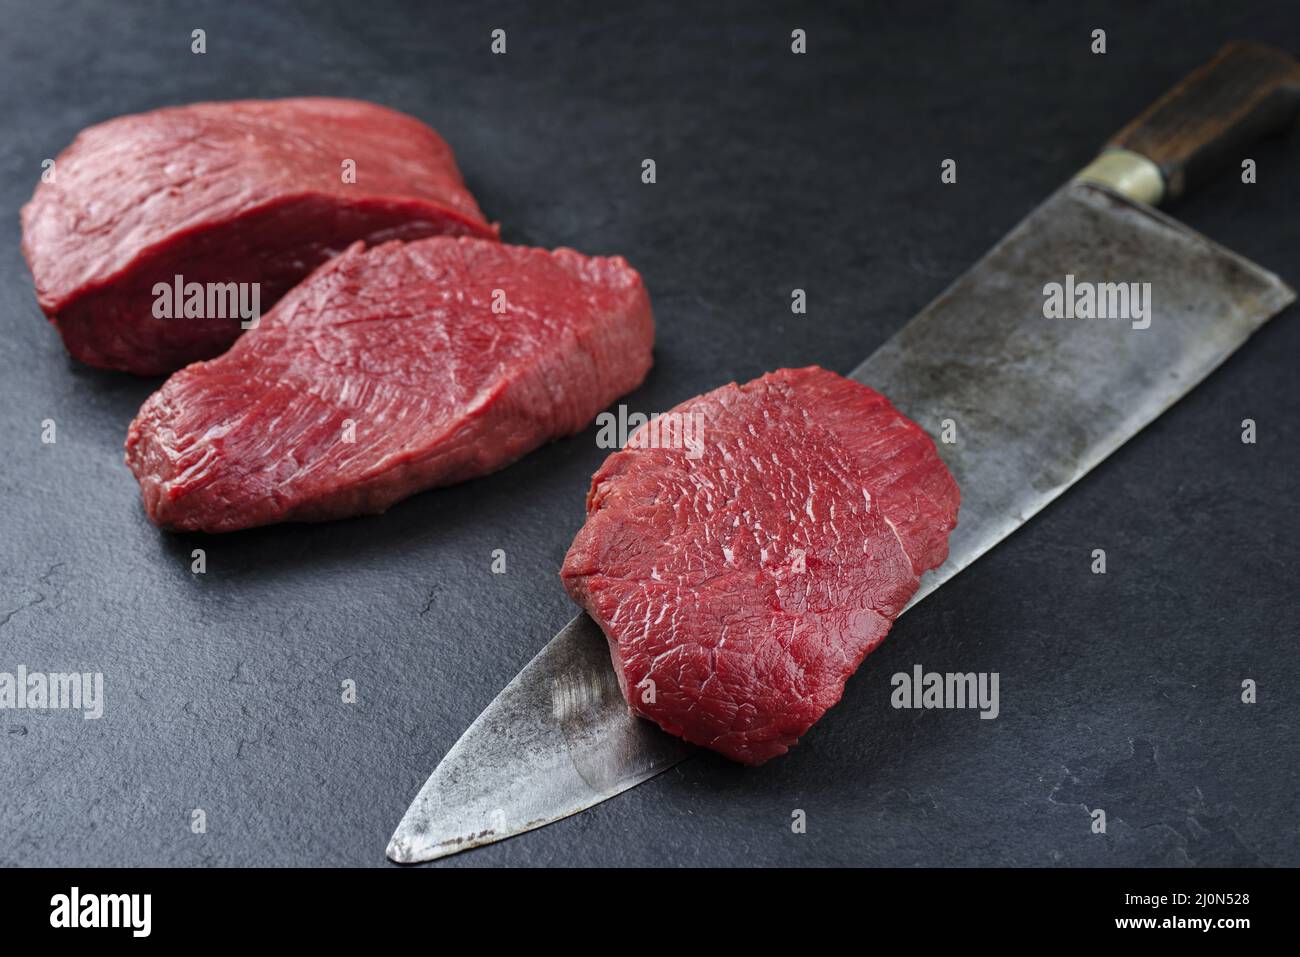 Morceau de steak et tranches de bœuf de bison vieilli et sec brut offert en gros plan sur fond noir avec espace de copie Banque D'Images